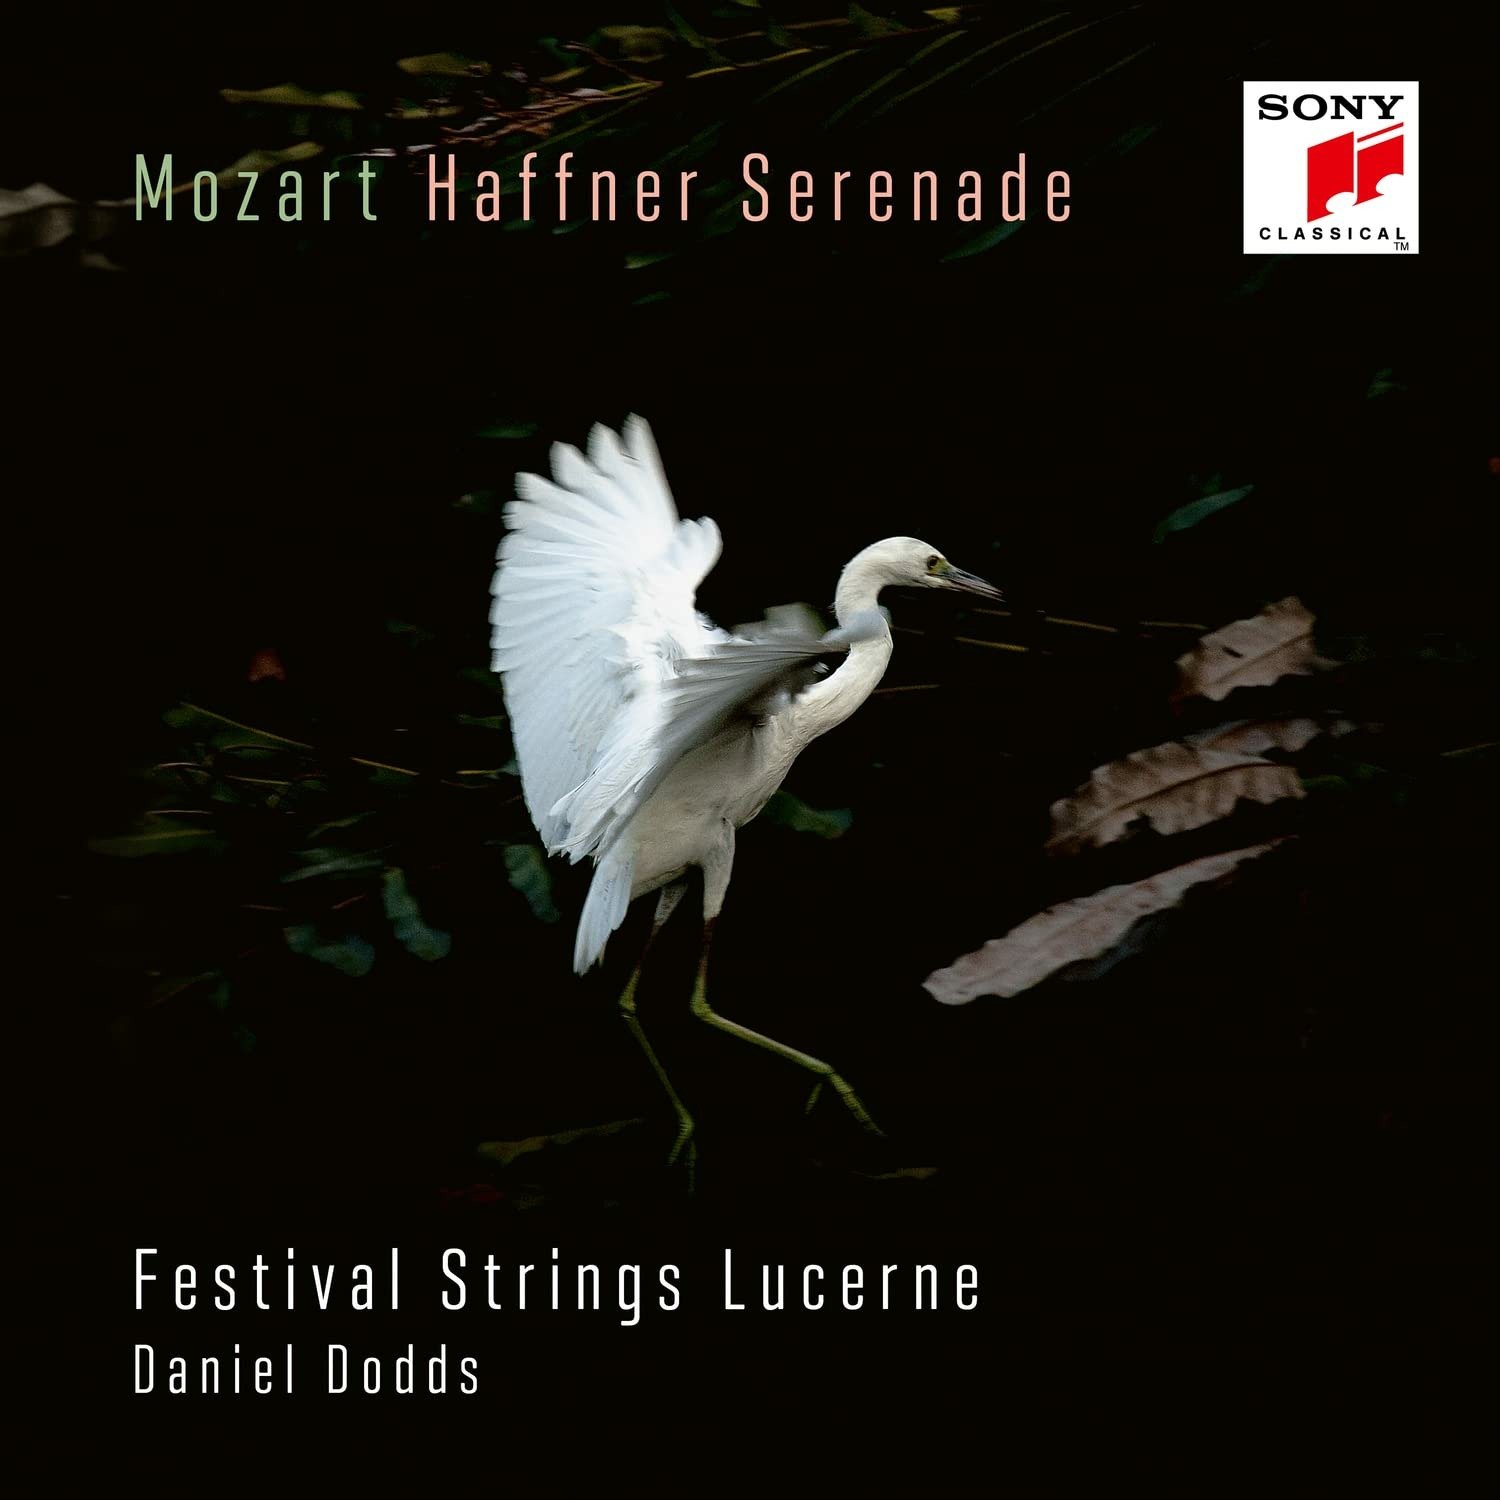 Festival Strings Lucerne - Mozart: Haffner-Serenade Kv 250 & Marsch Kv 249, CD